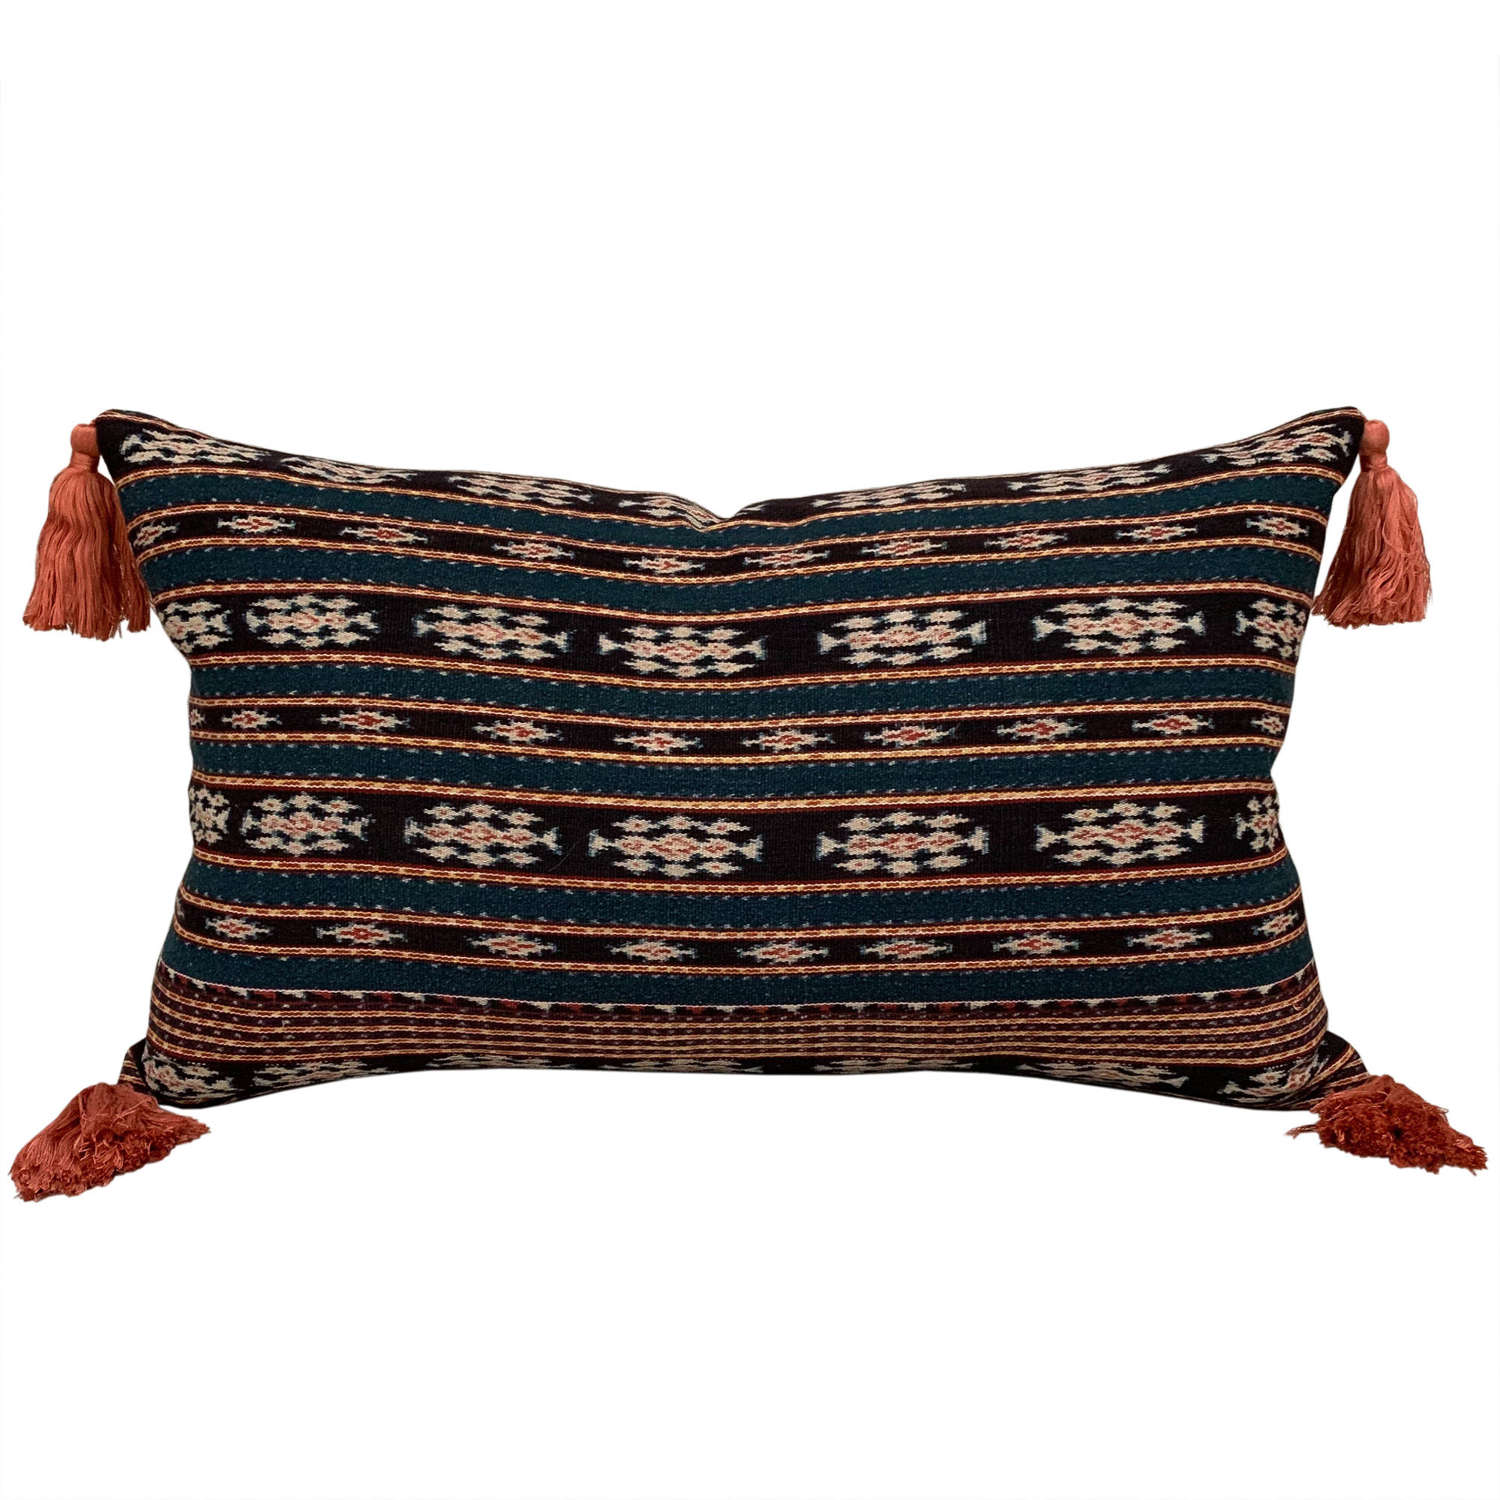 Savu ikat cushions with tassels